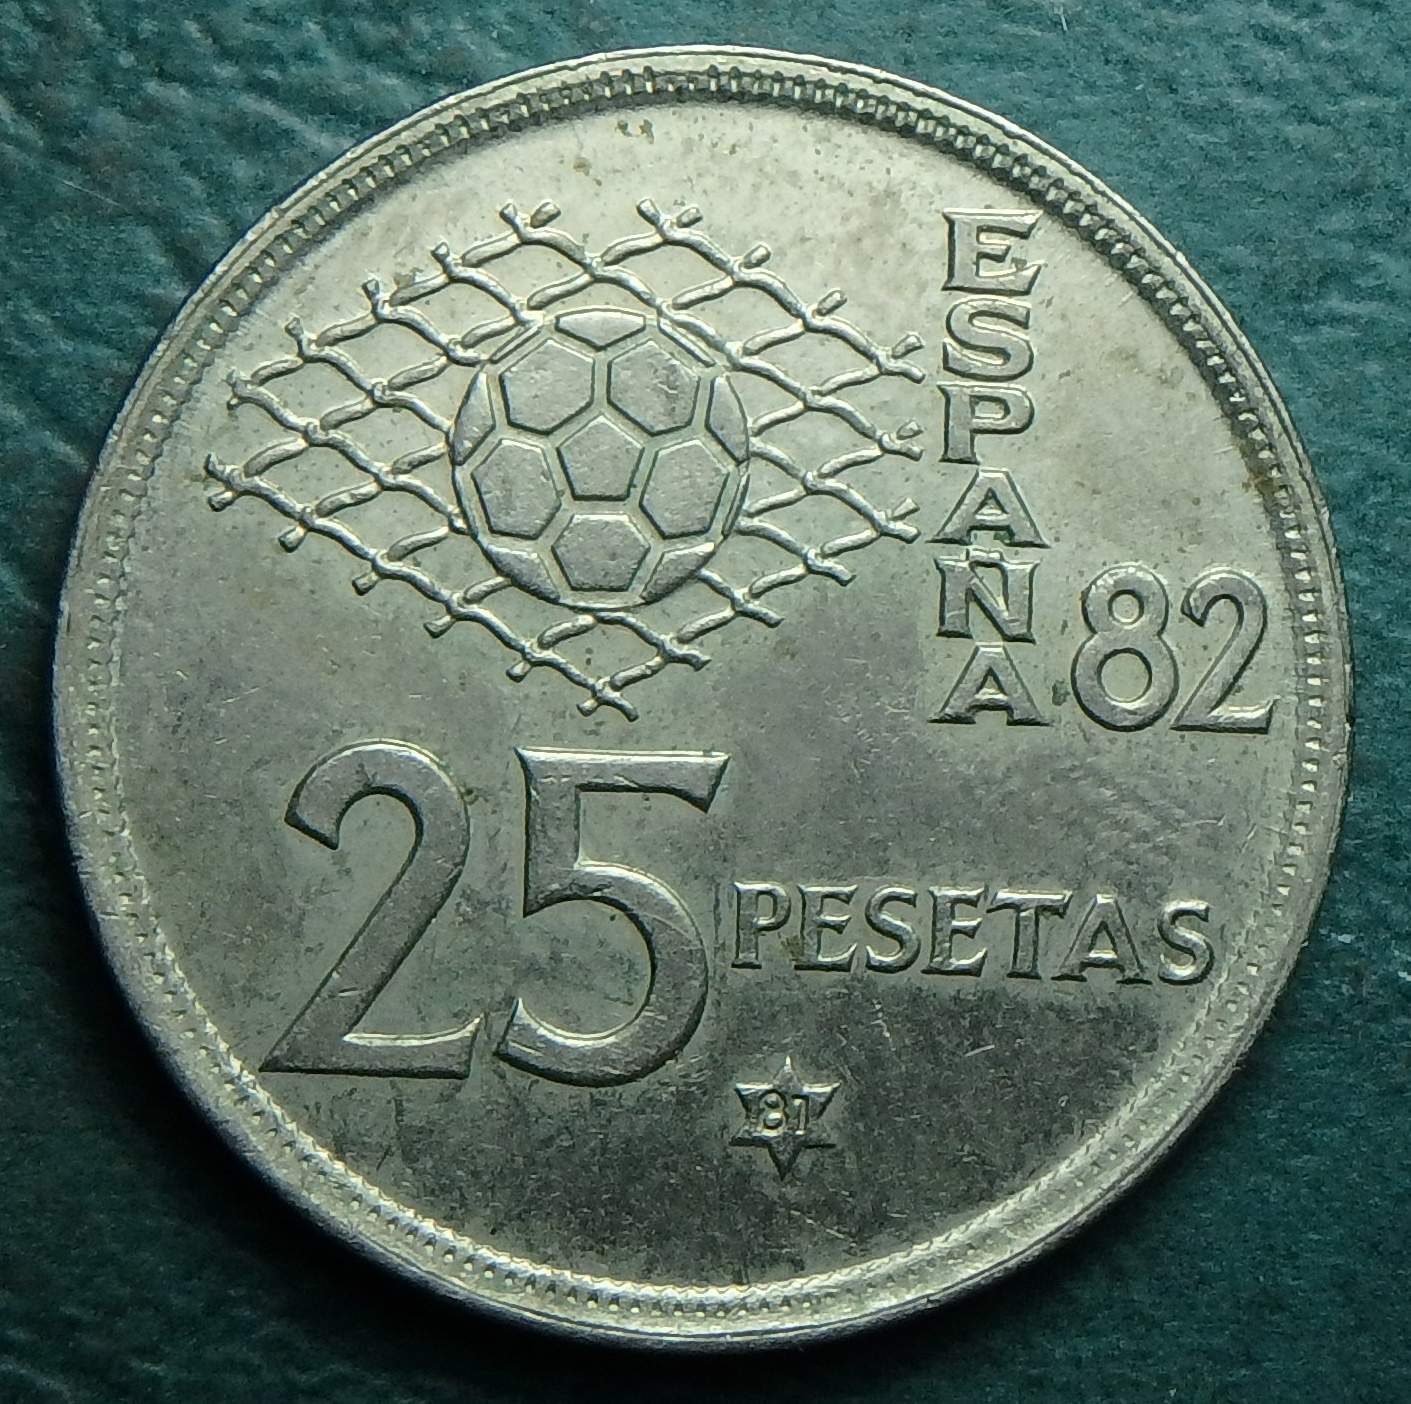 1981 ES 25 p rev.JPG